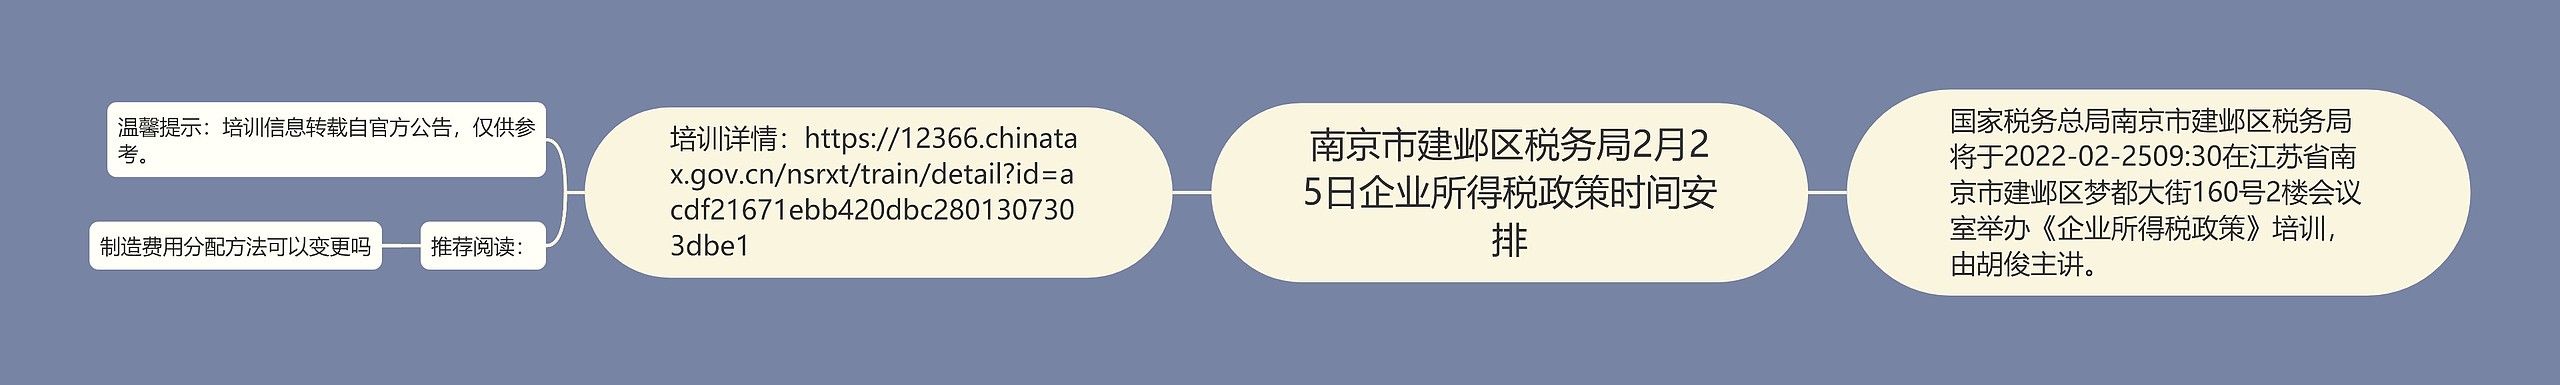 南京市建邺区税务局2月25日企业所得税政策时间安排思维导图